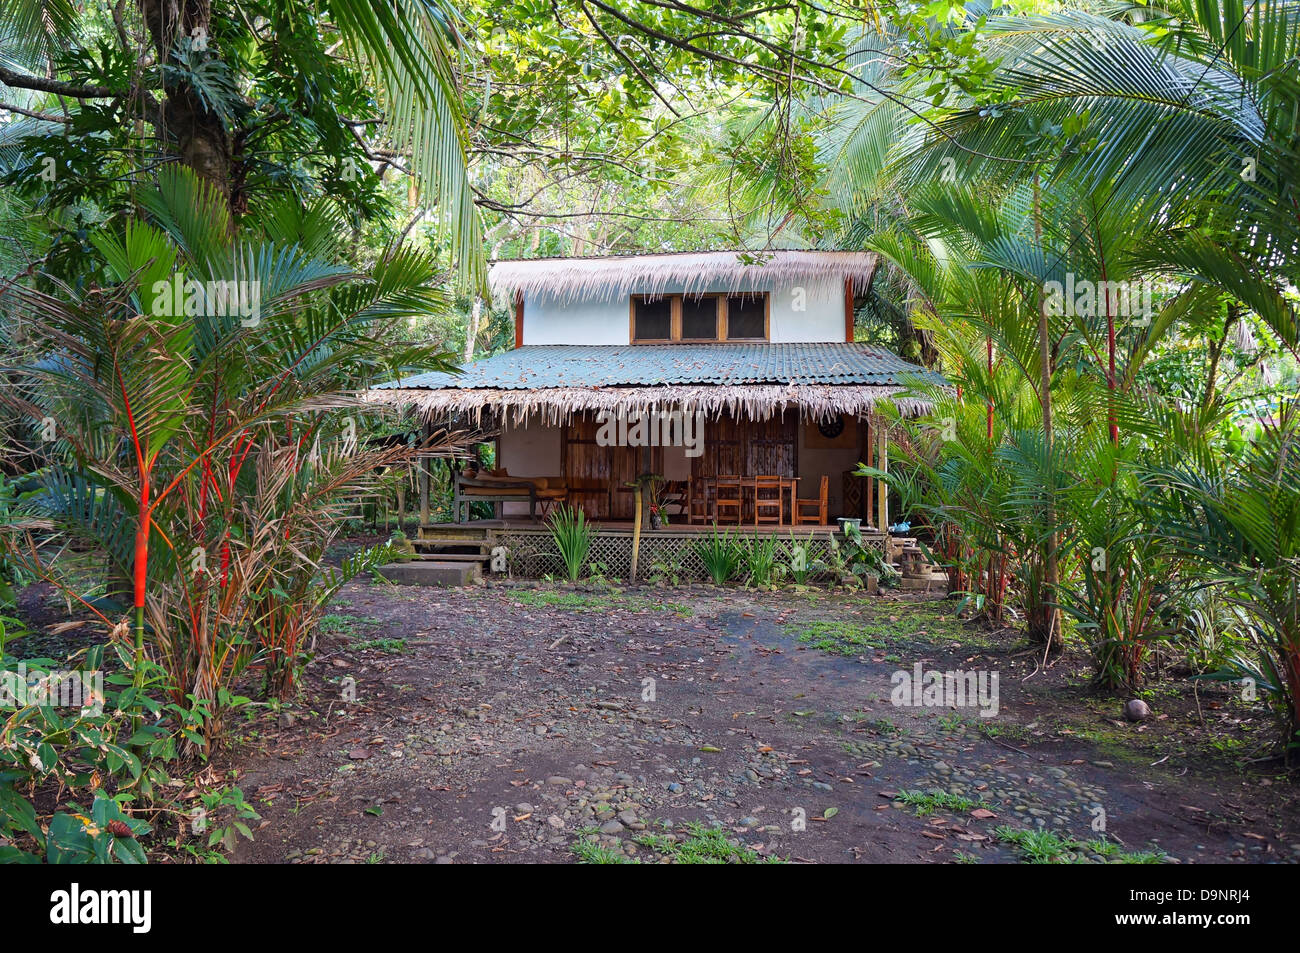 Casa tropicale con vegetazione esotica nella costa caraibica del Costa Rica Foto Stock